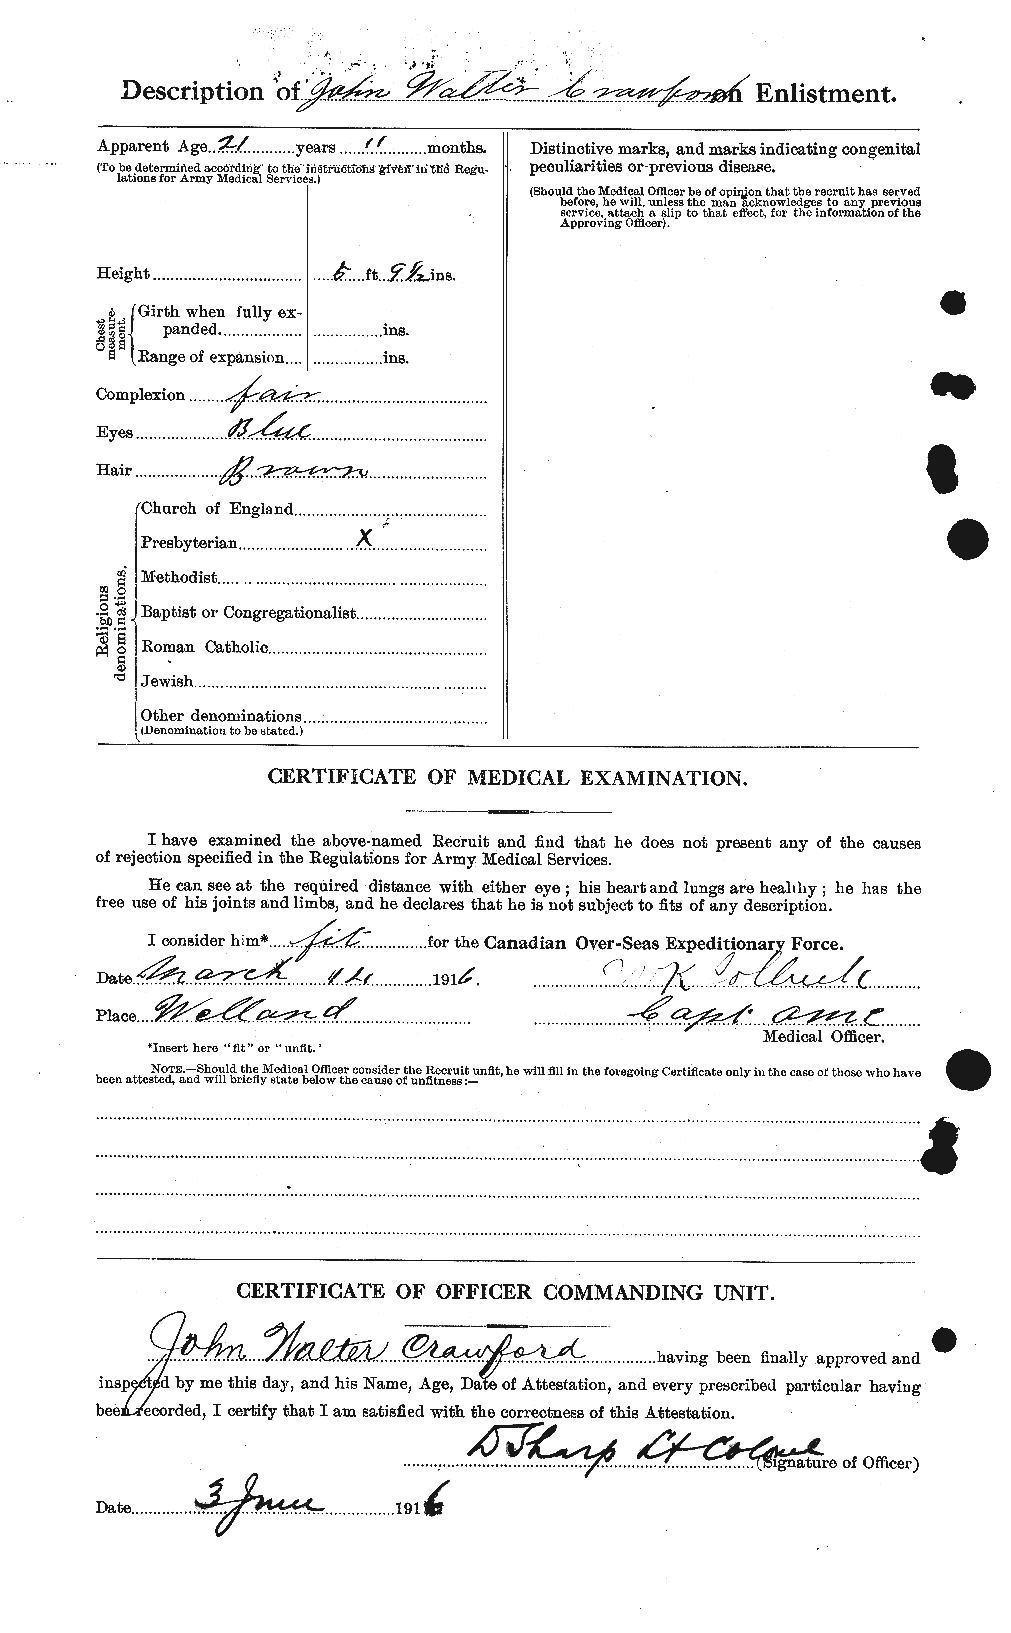 Dossiers du Personnel de la Première Guerre mondiale - CEC 061822b